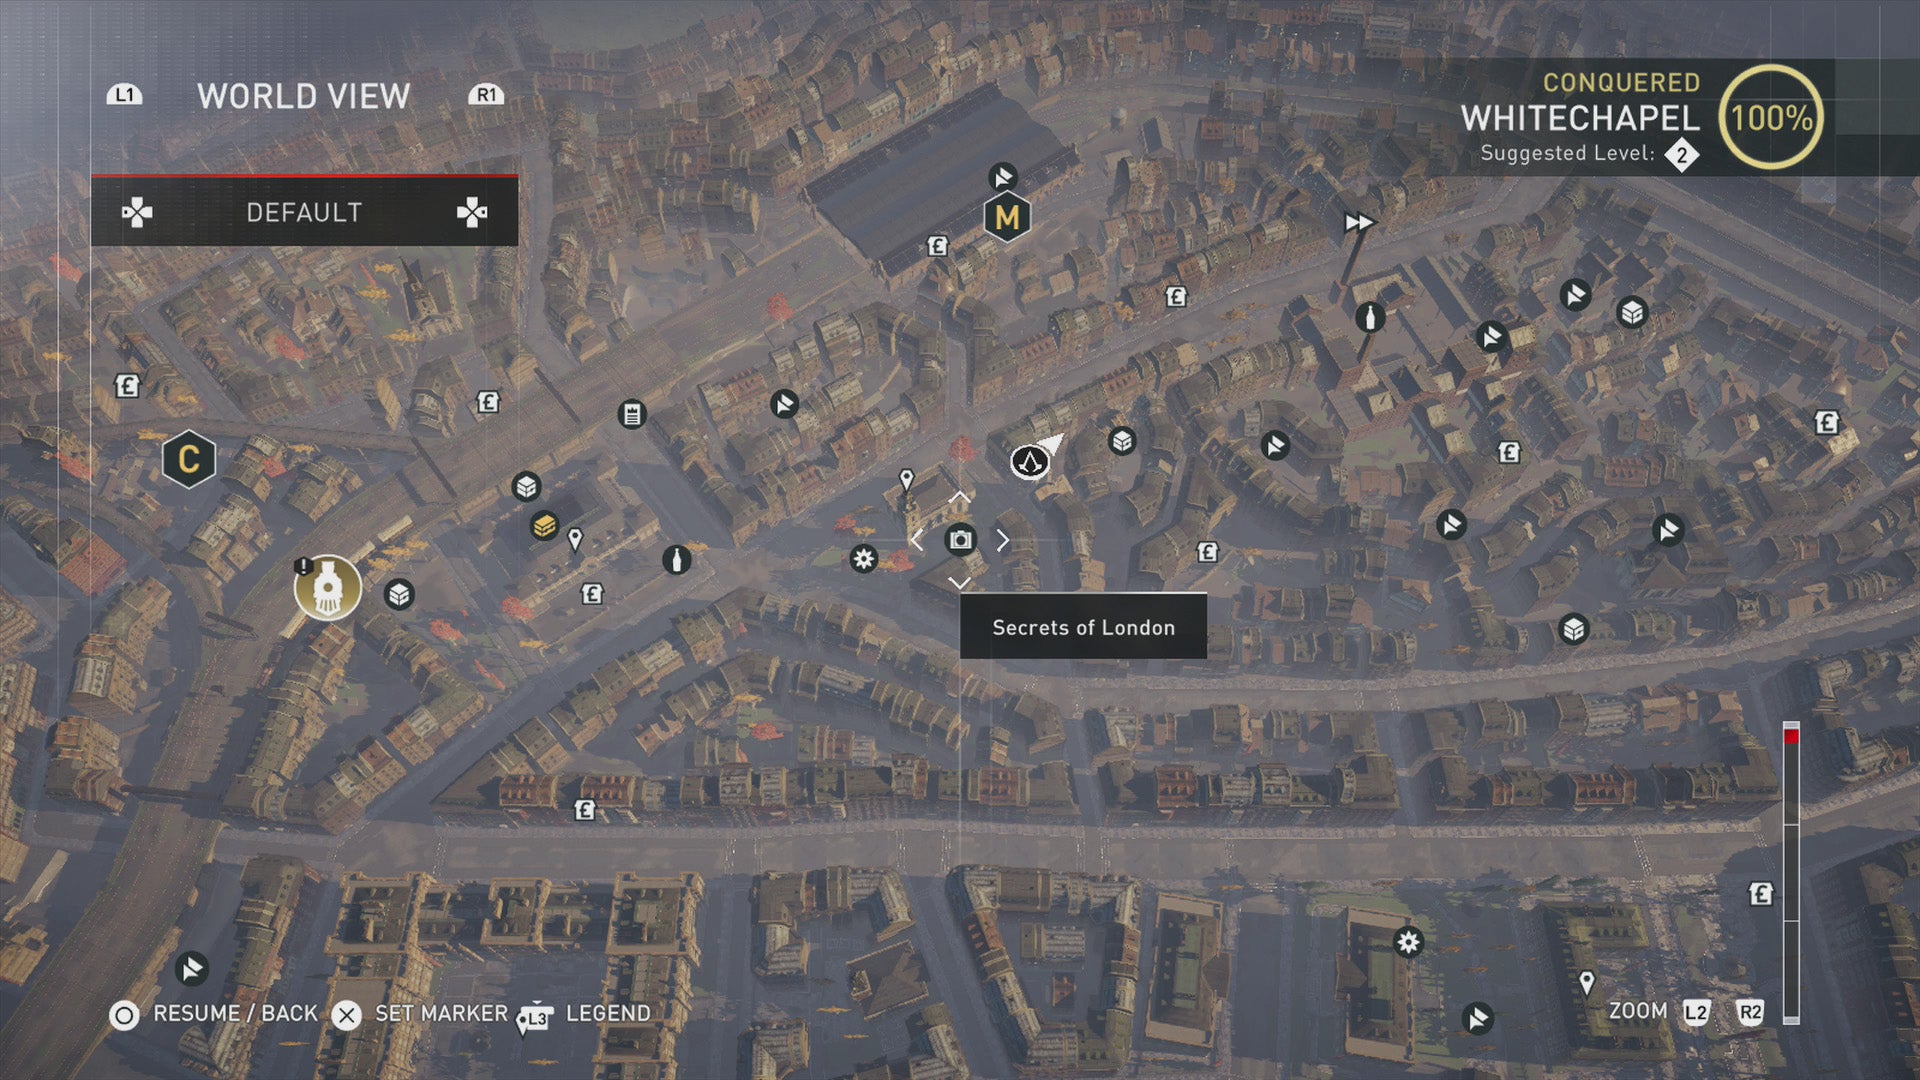 konflikt účet holý ac syndicate whitechapel map portrét soutěžit odzbrojení